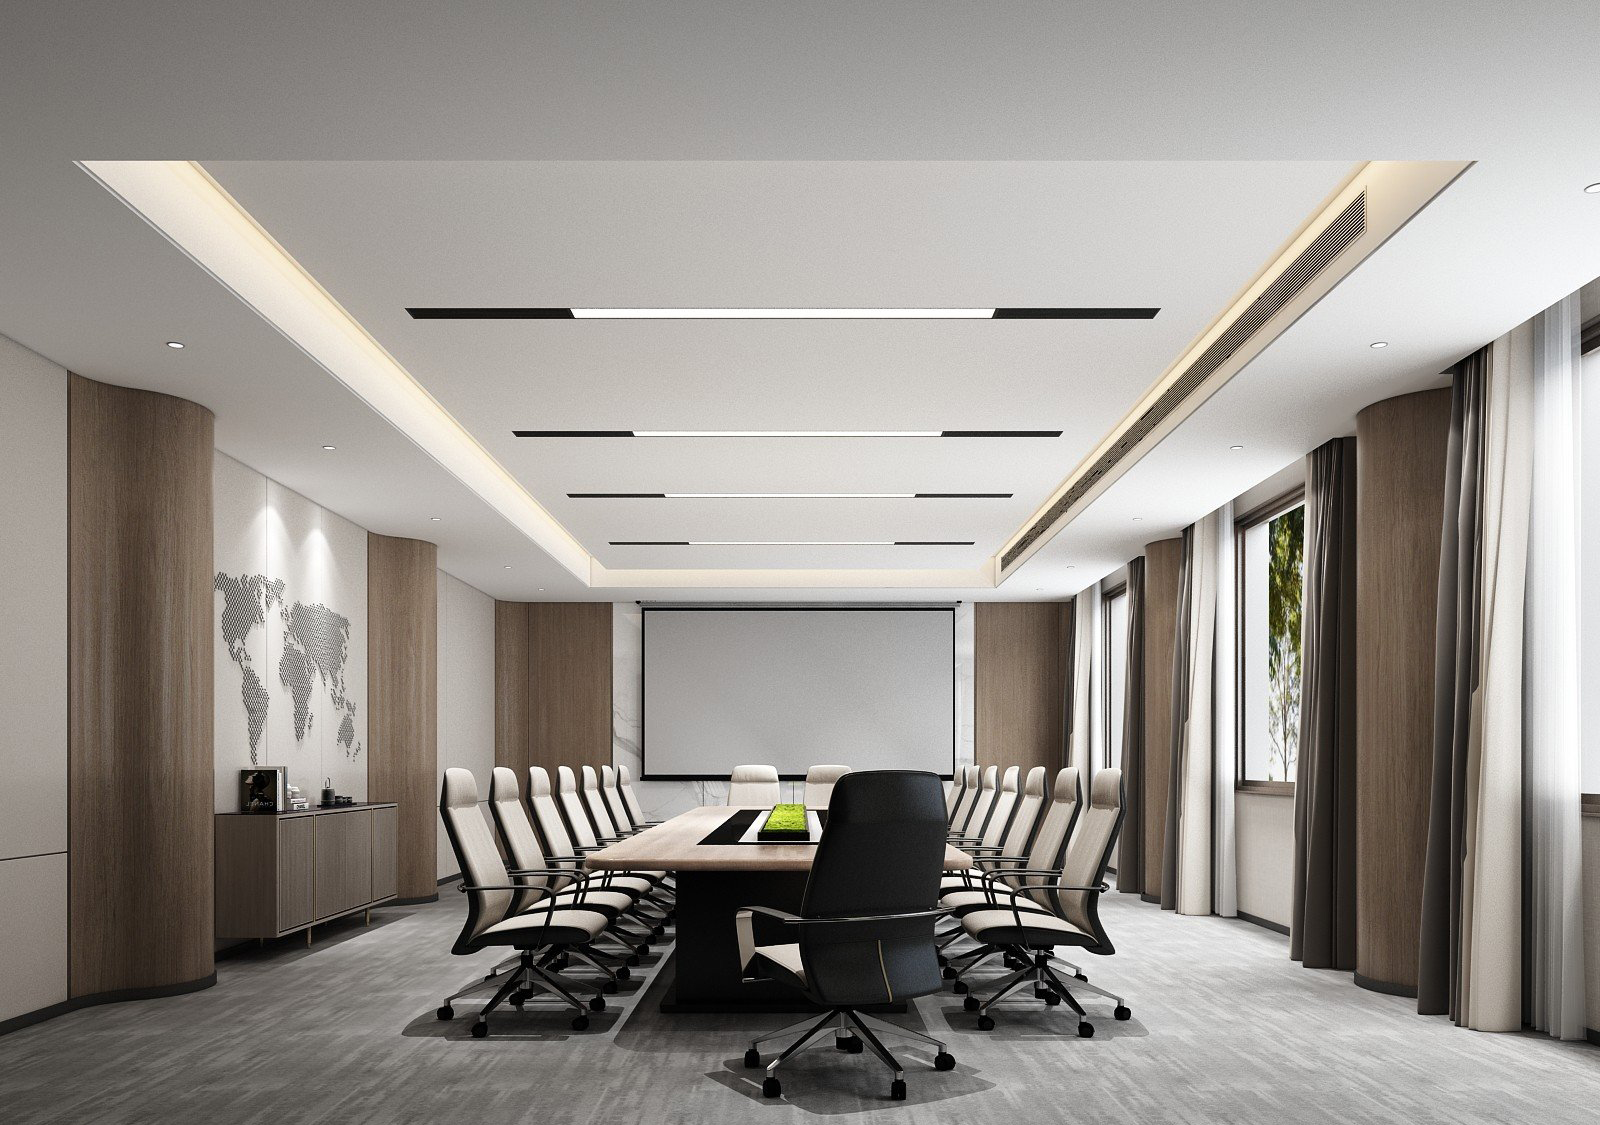 Thiết kế nội thất phòng họp hiện đại nâng cao hình ảnh của công ty, tăng tính chuyên nghiệp trong công việc